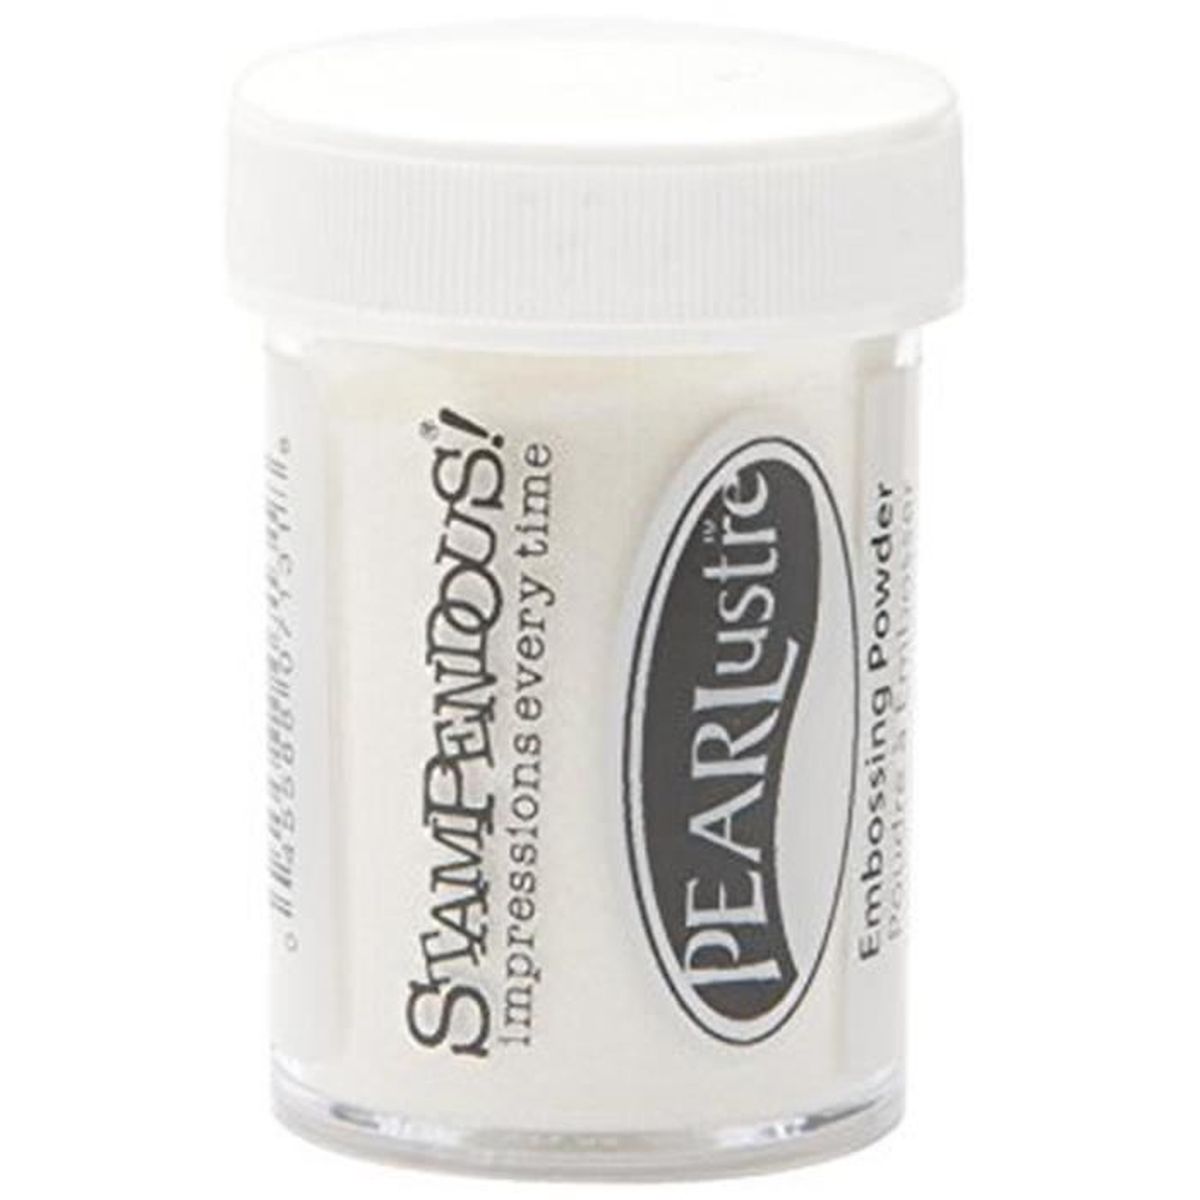 Stampendous détail 0,5 oz Poudre à Embosser Blanc Opaque 